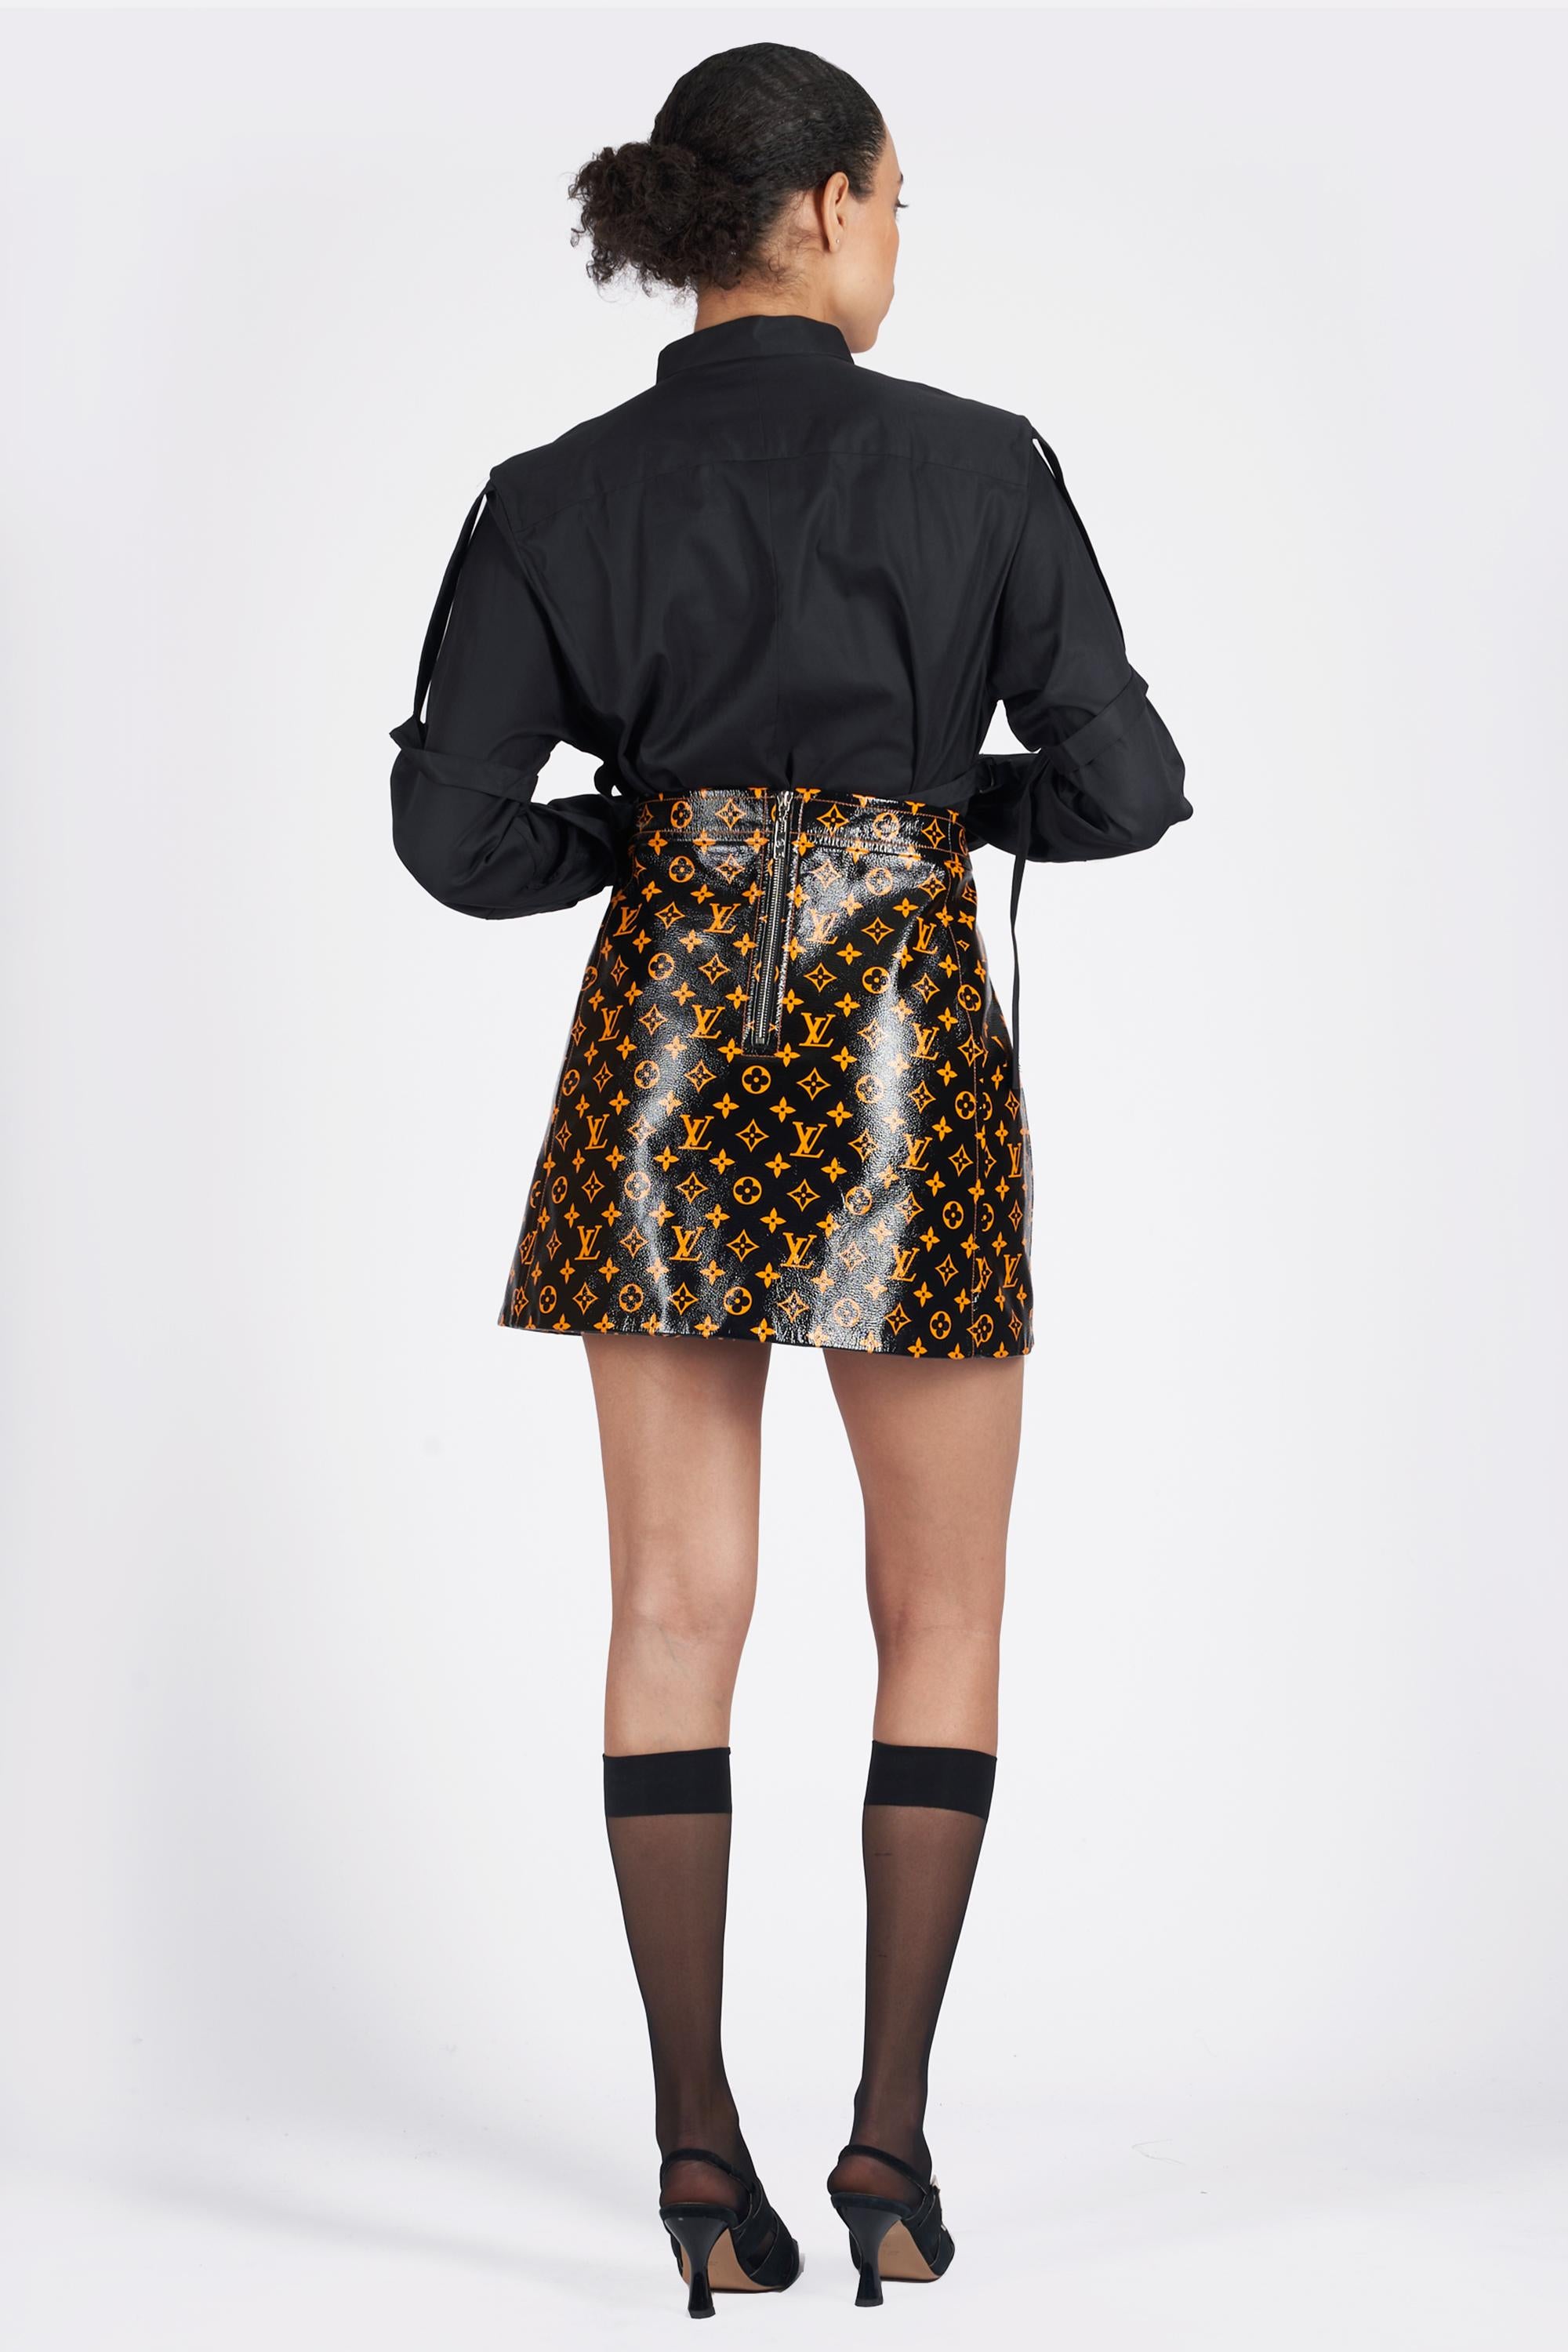 Louis Vuitton Mini Skirts for Women - Poshmark